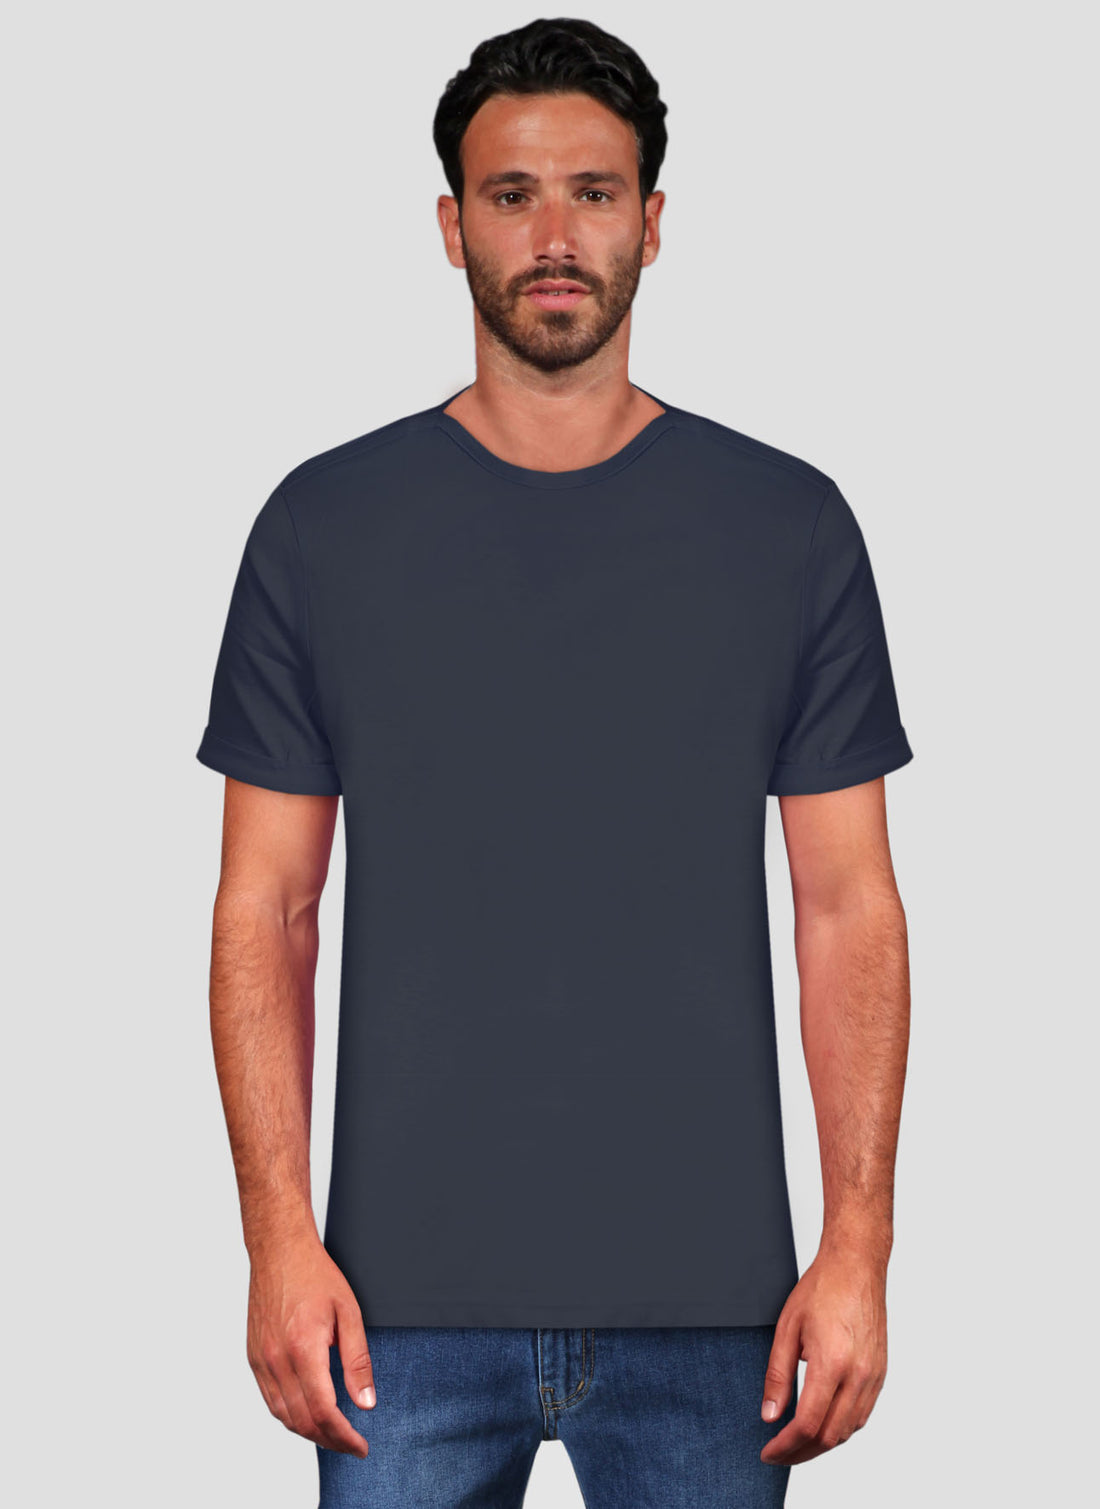 T-Shirt Mezza Manica Collo a Barca - Blue